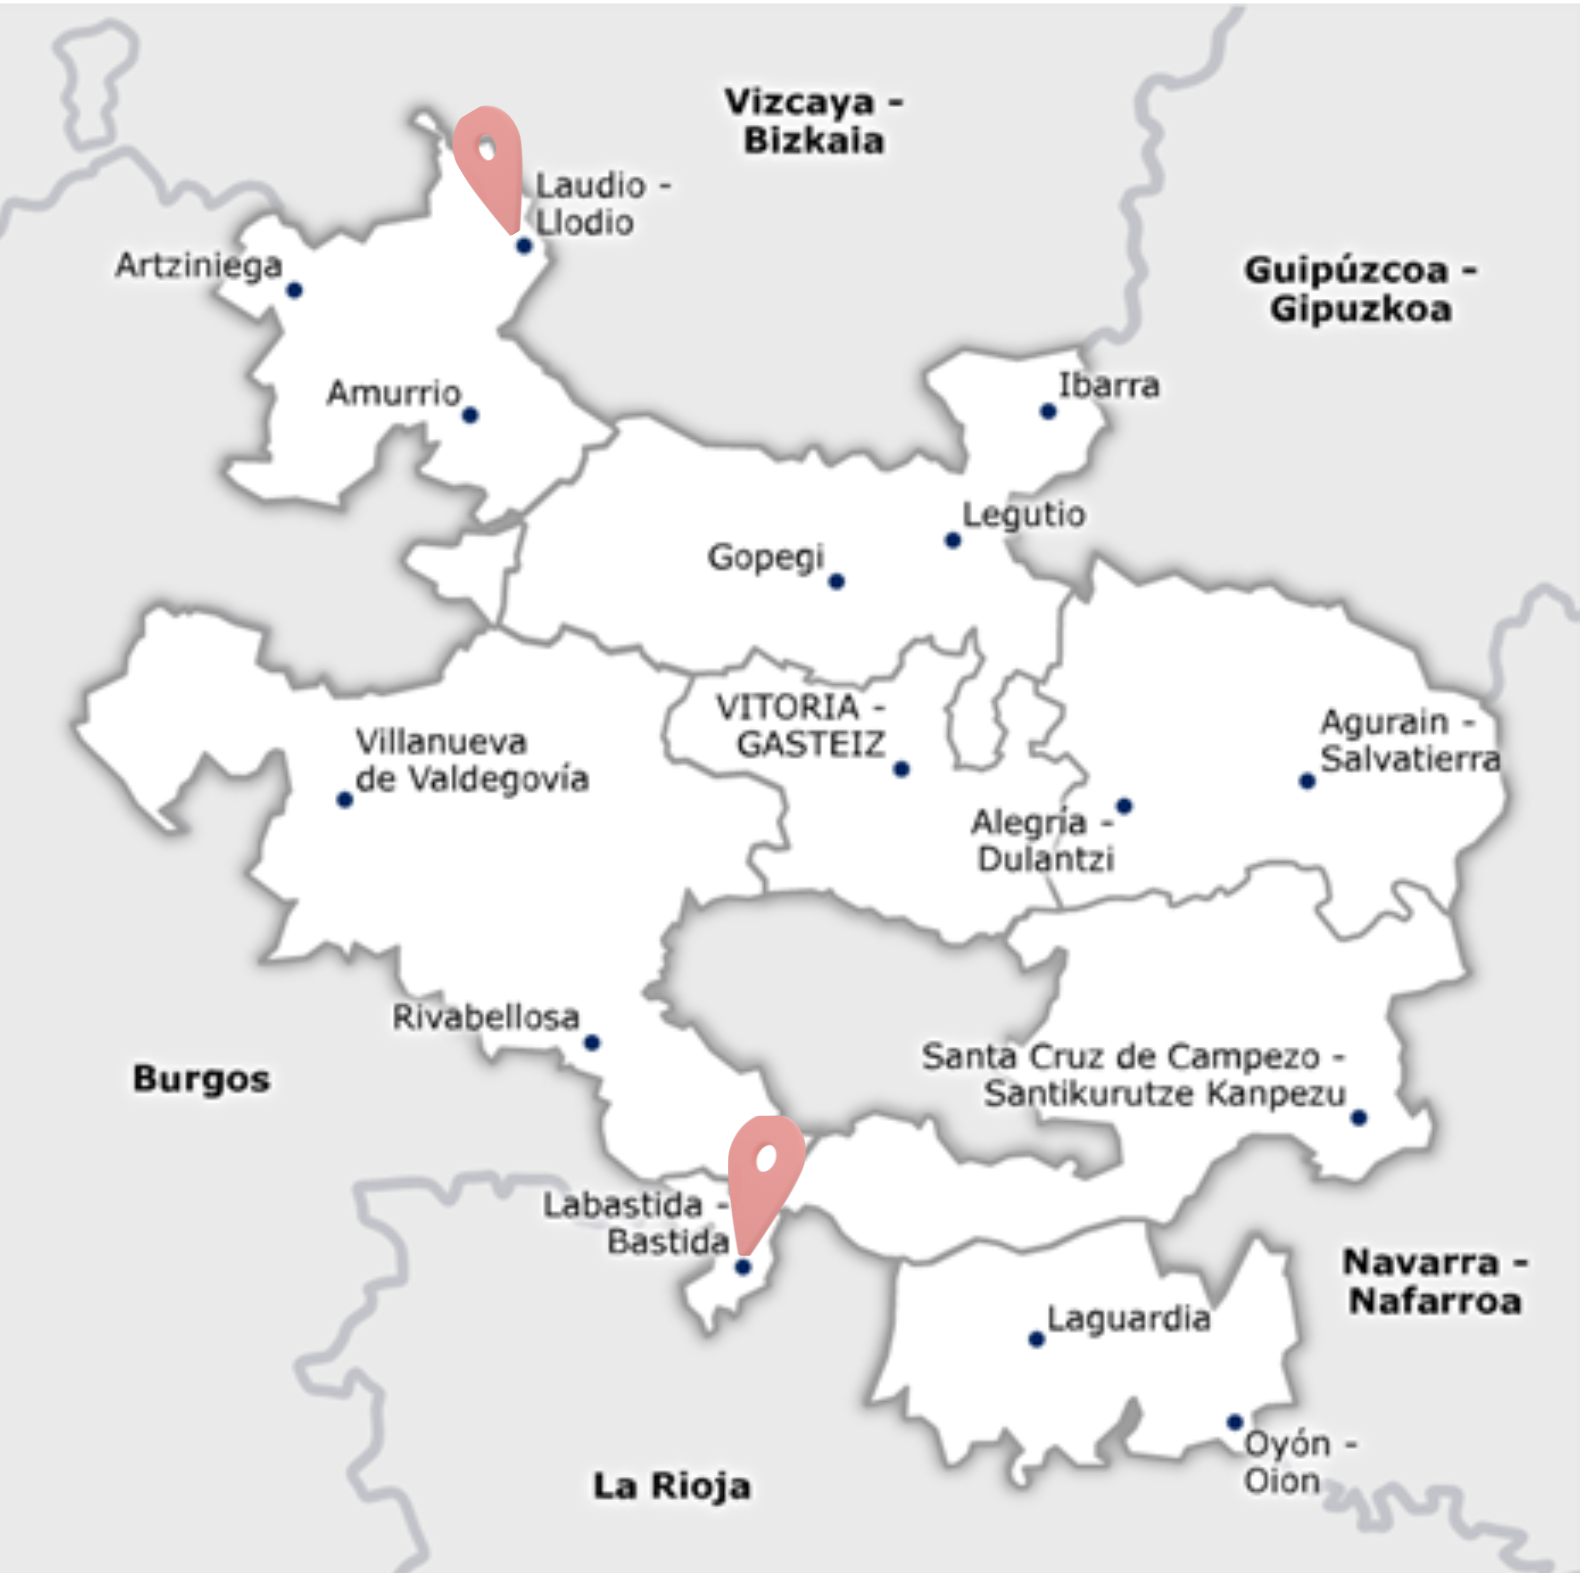 Mapa del País Vasco donde se muestra la ubicación de las dos sedes de las escuelas de soledad activas actualmente: Laudio y Bastida